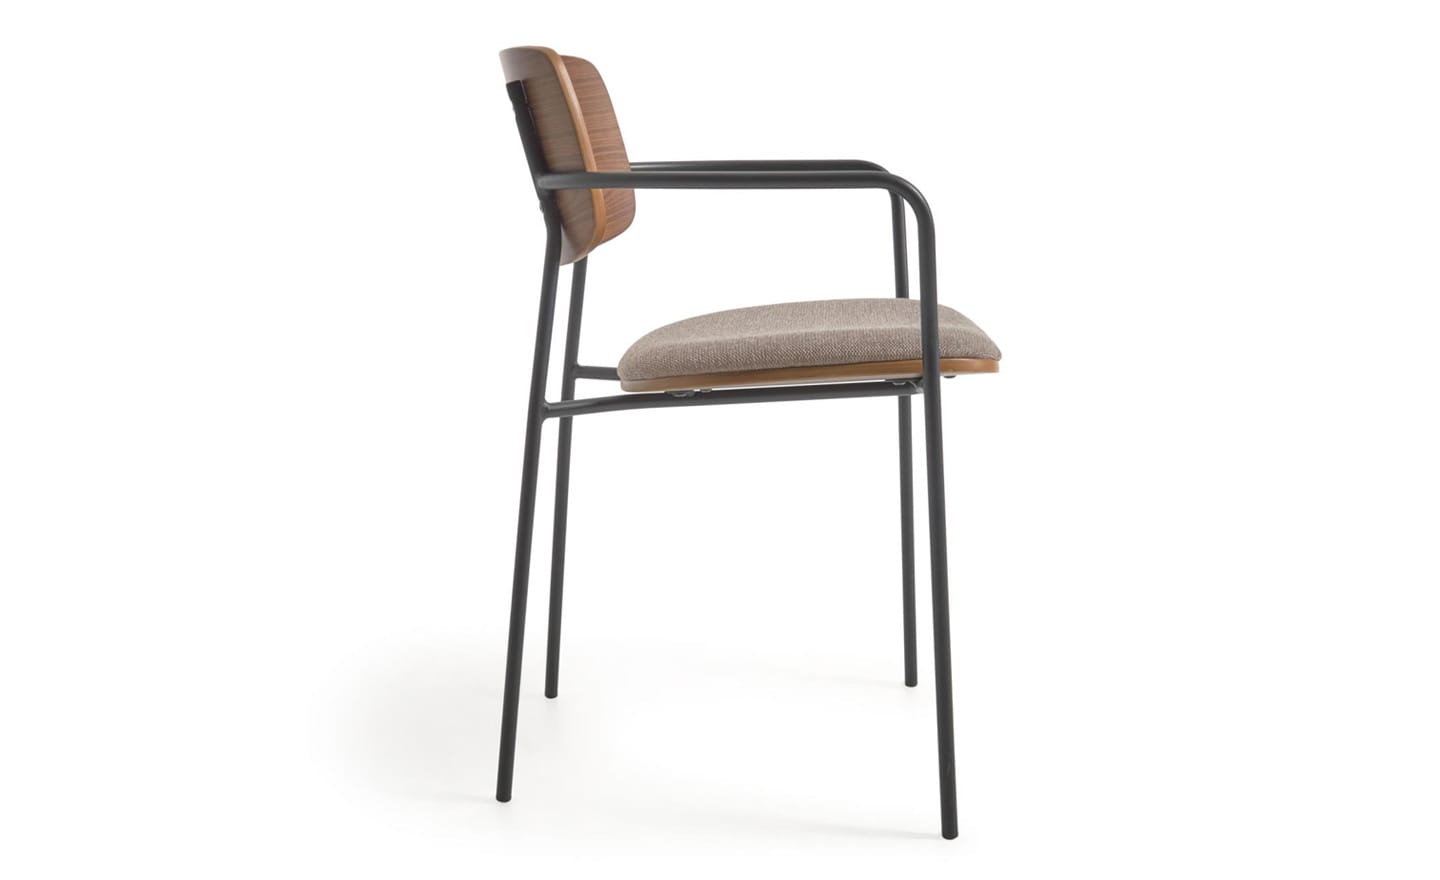 Cadeira Maureen Nogueira com braços em metal preto mate e encosto em nogueira natural. Estilo e conforto com tratamento antimanchas para fácil limpeza.